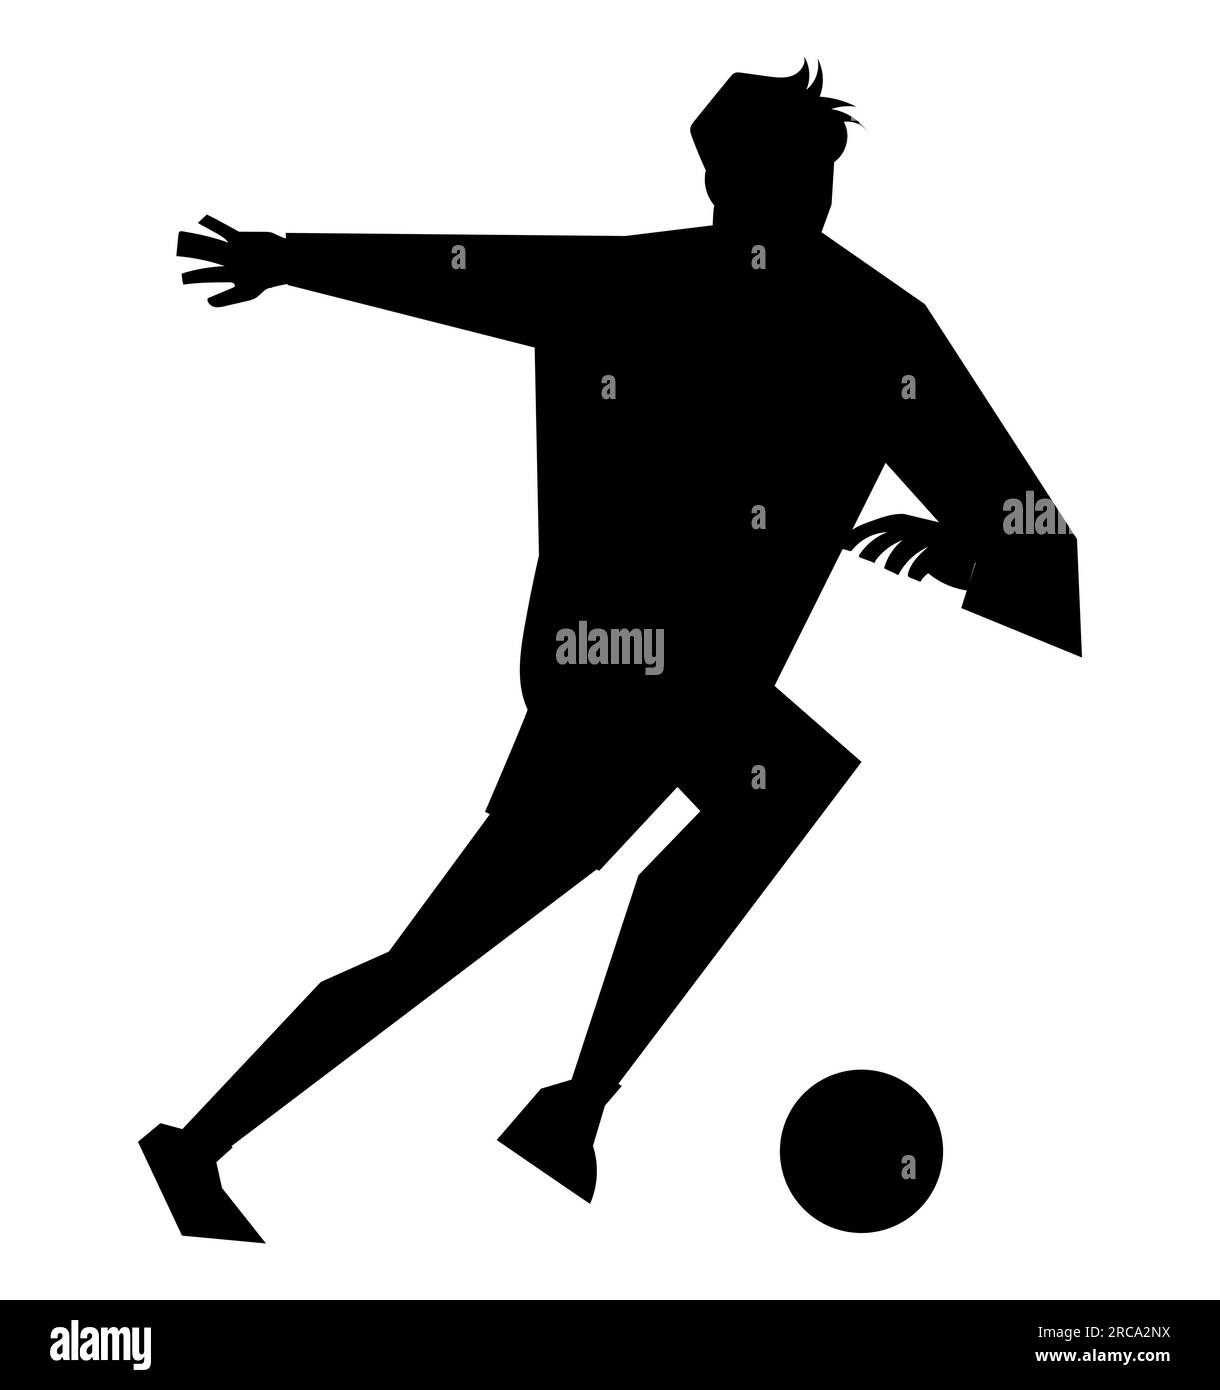 Silhouette noire d'un homme jouant au football, sports de l'homme, illustration vectorielle isolée sur fond blanc Illustration de Vecteur